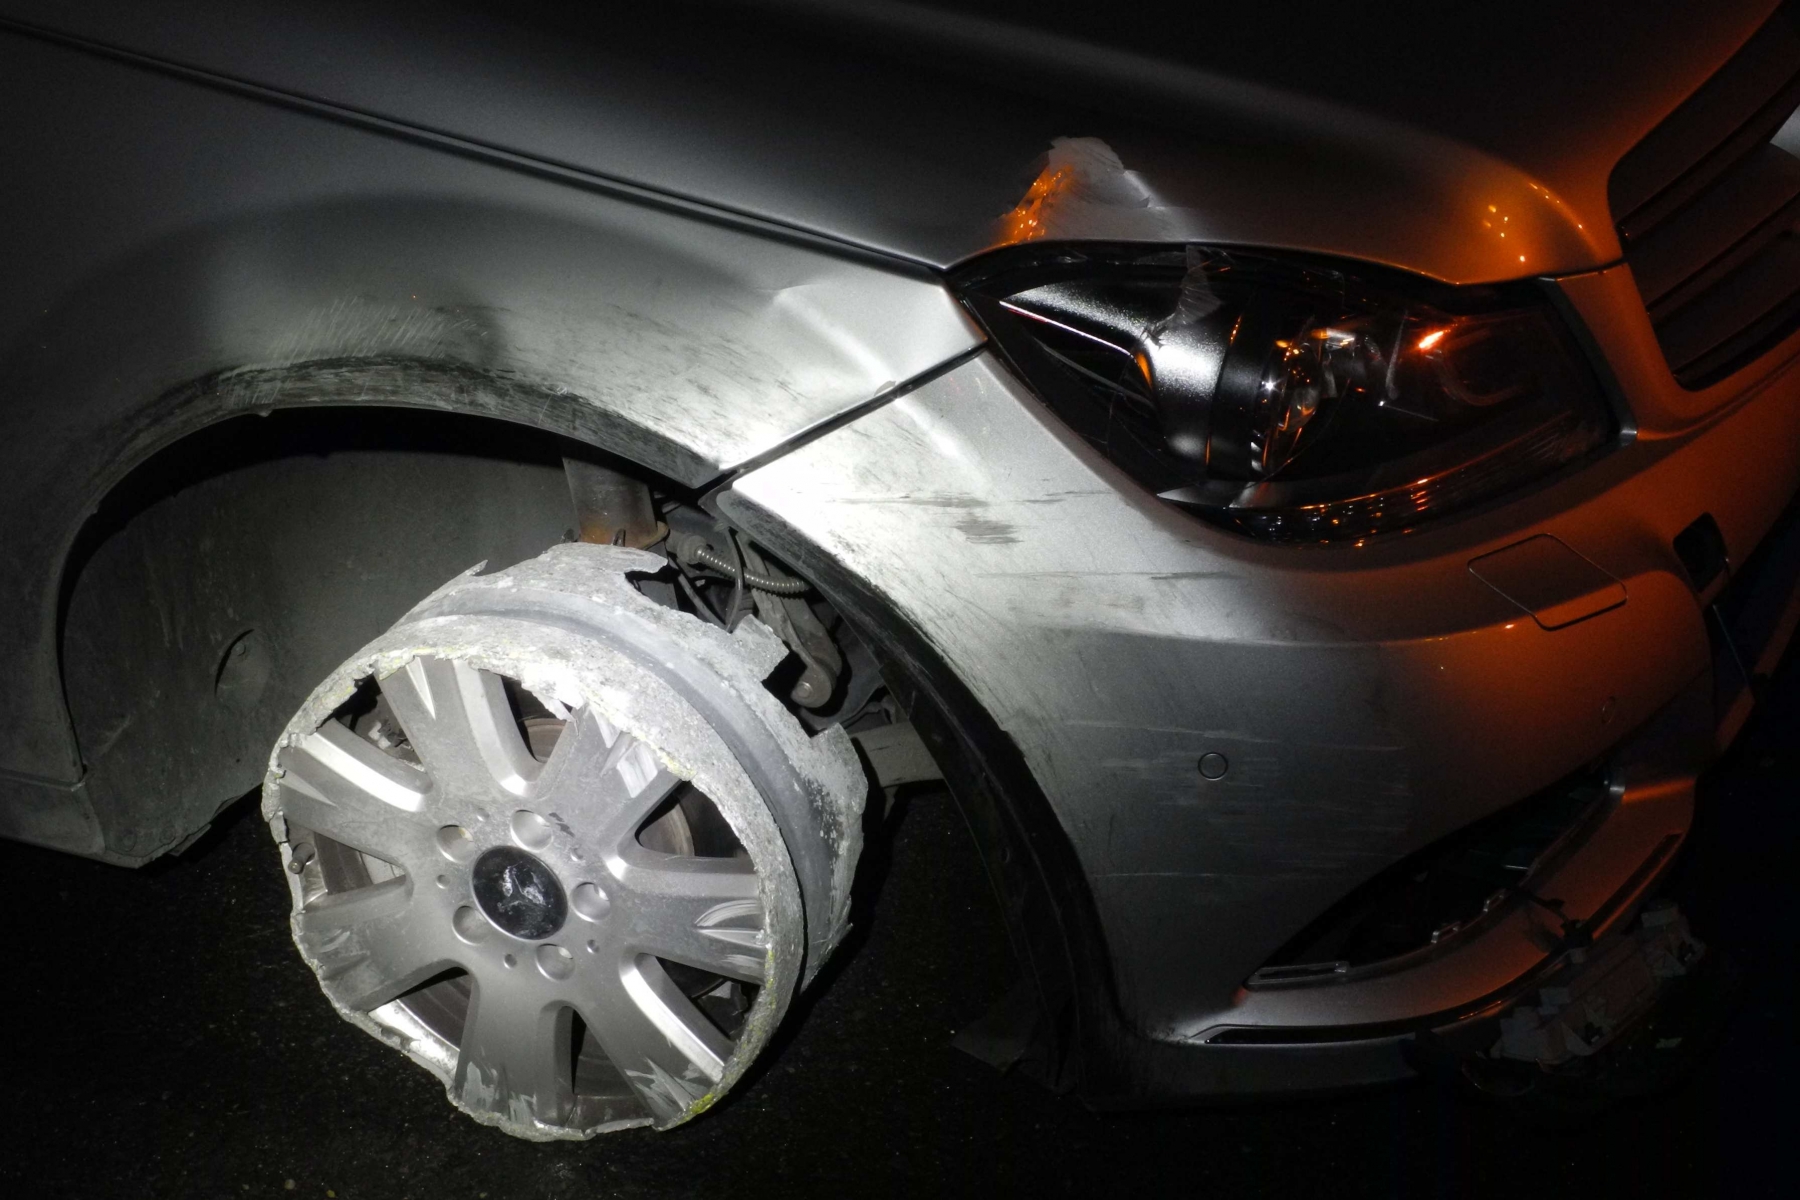 On ne connaît pas le taux d'alcoolémie de la conductrice, mais elle ne s'est pas rendu compte qu'il lui manquait un pneu.